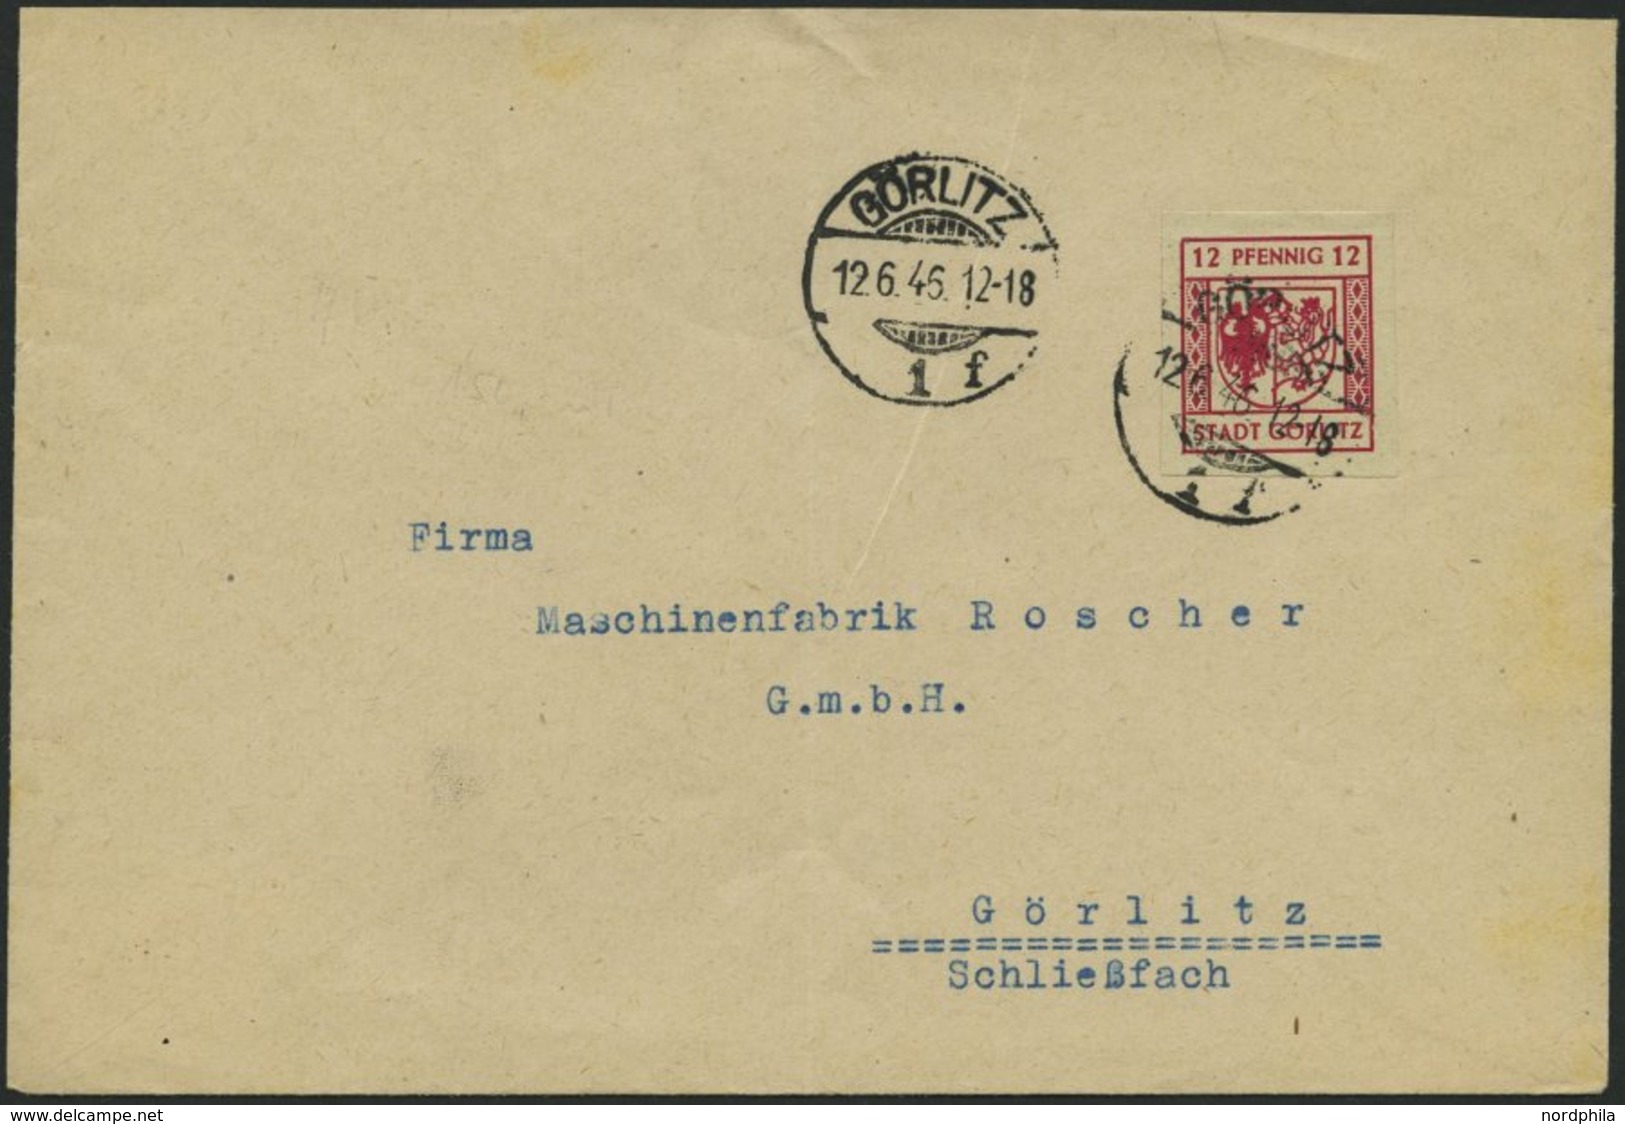 GÖRLITZ 4aU BRIEF, 1946, 12 Pf. Lilarot, Graues Papier, Ungezähnt, Prachtbrief - Posta Privata & Locale